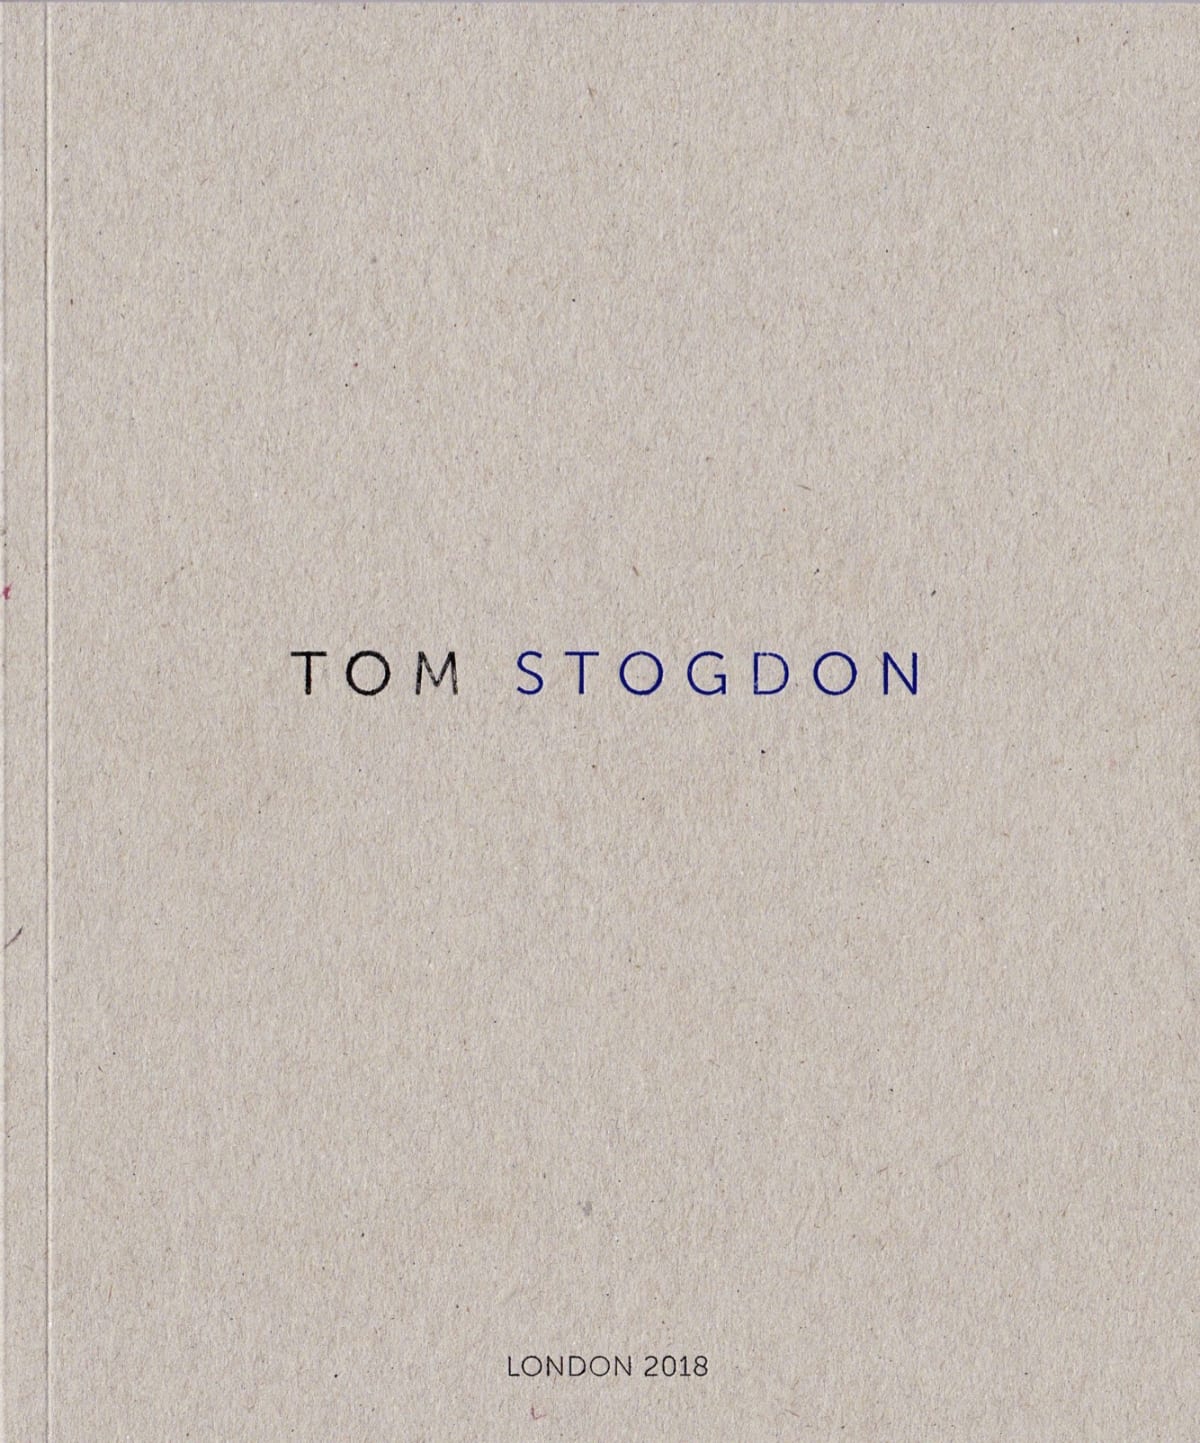 Tom Stogdon